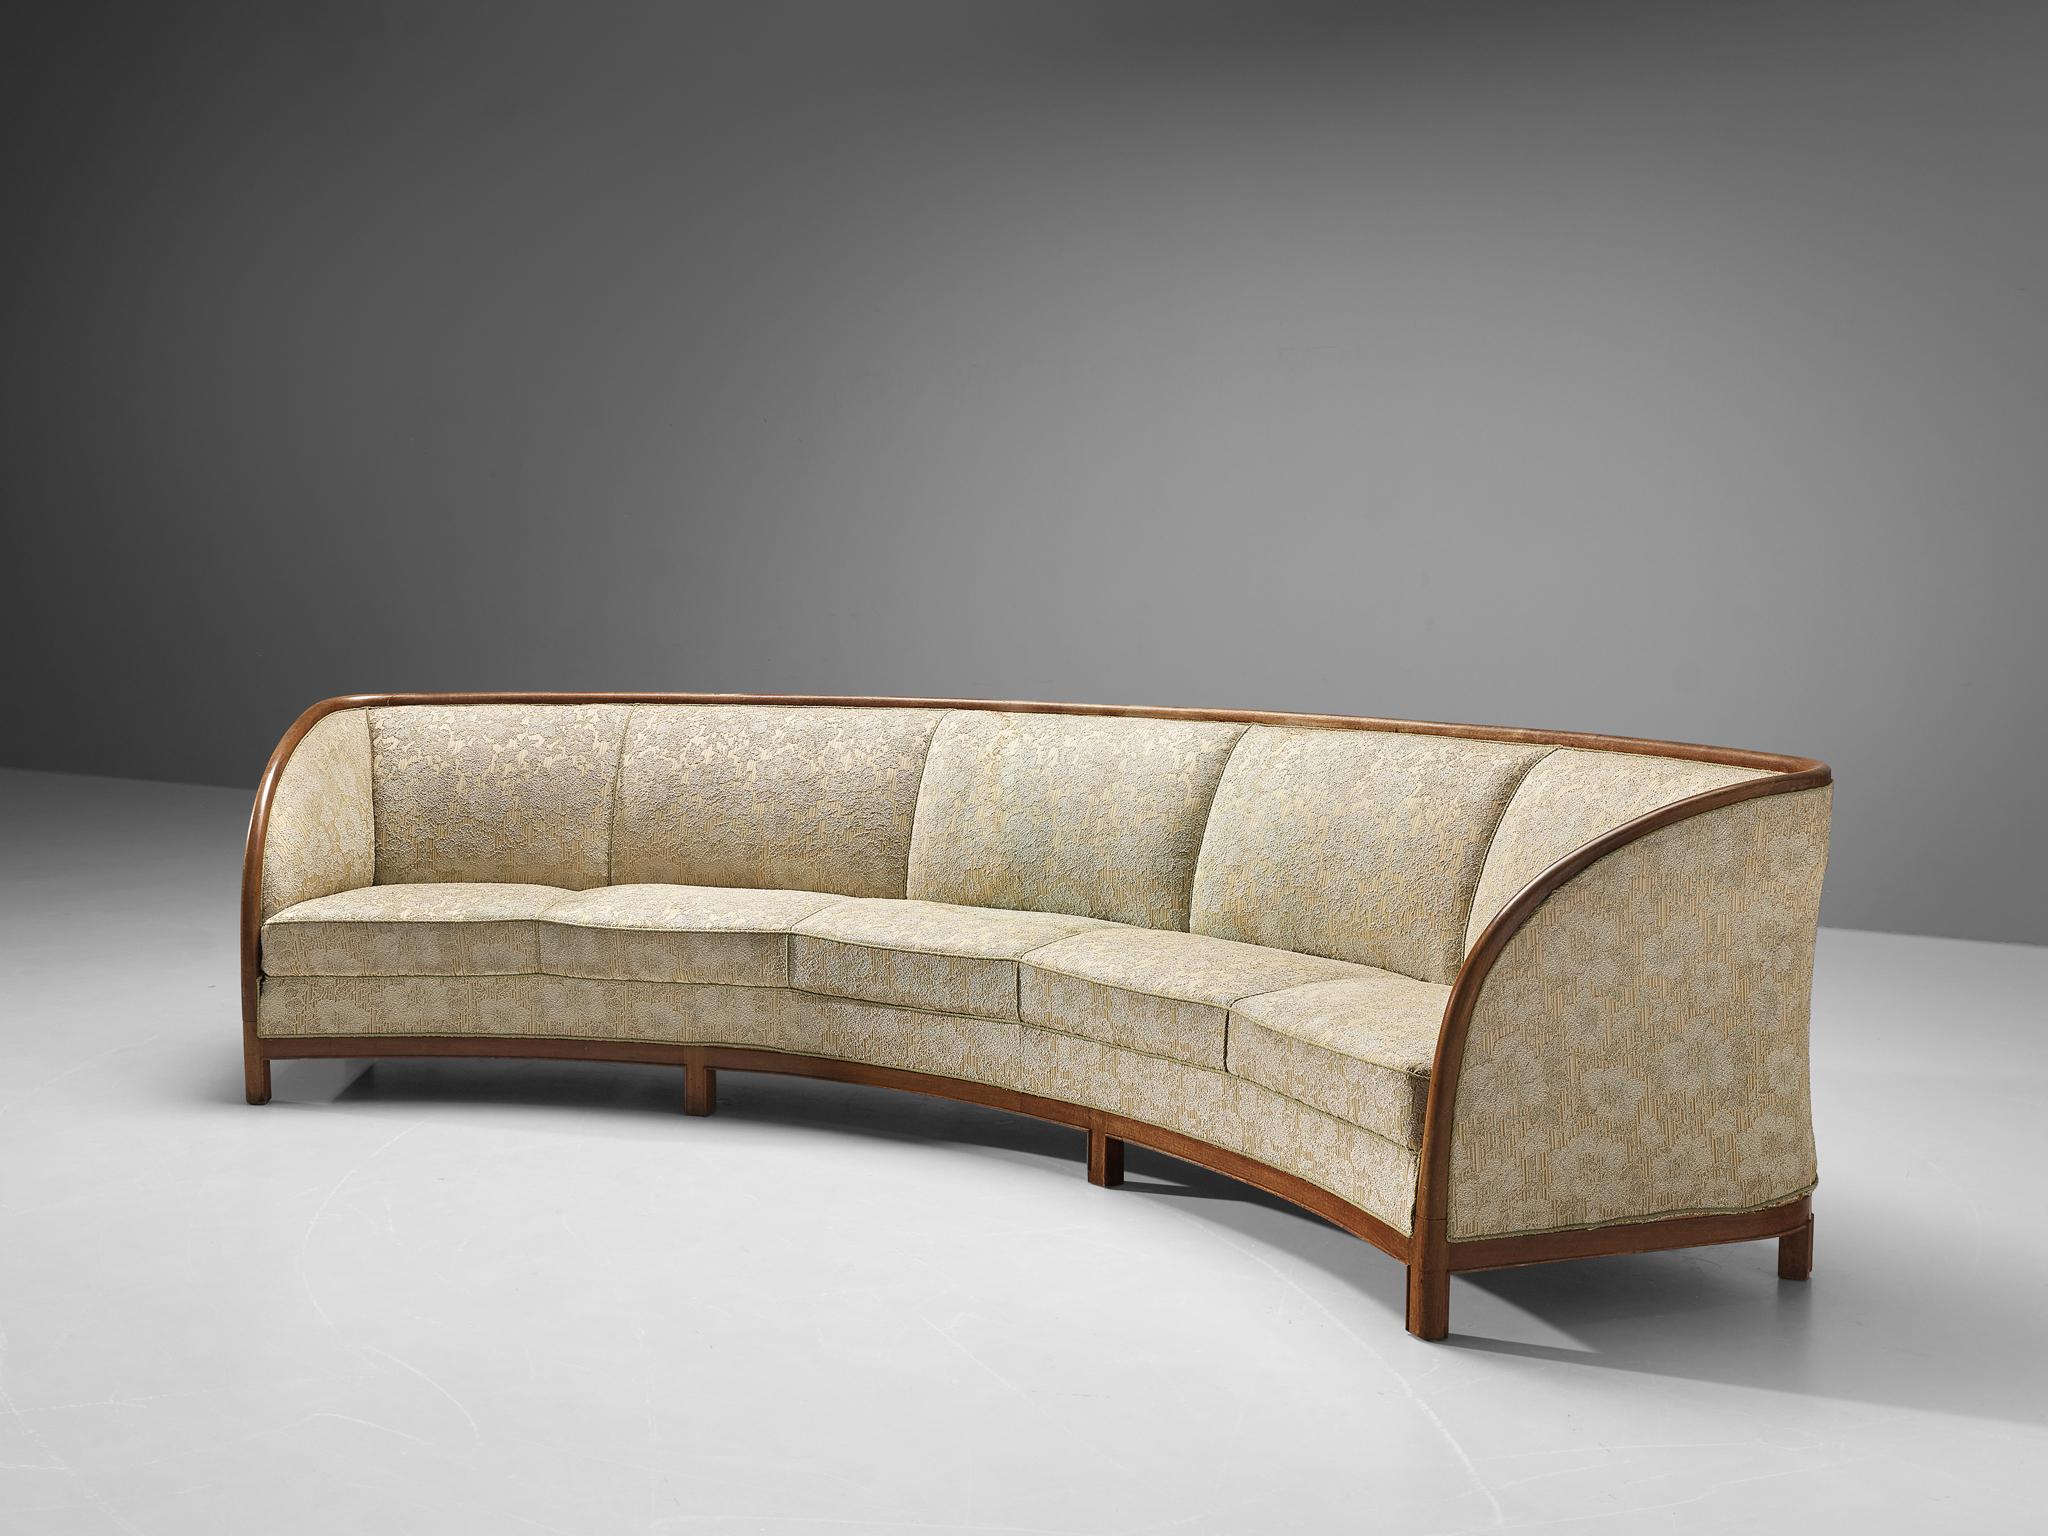 Sofa, Stoff, Holz, Dänemark, 1950er Jahre

Ein großes Sofa dänischer Herkunft, das Raffinesse und schlichte Einfachheit ausstrahlt. Die geschwungene Form verleiht Ihrem Raum einen Hauch von Dynamik. Die Sitze sind mit einem gemusterten Stoff mit